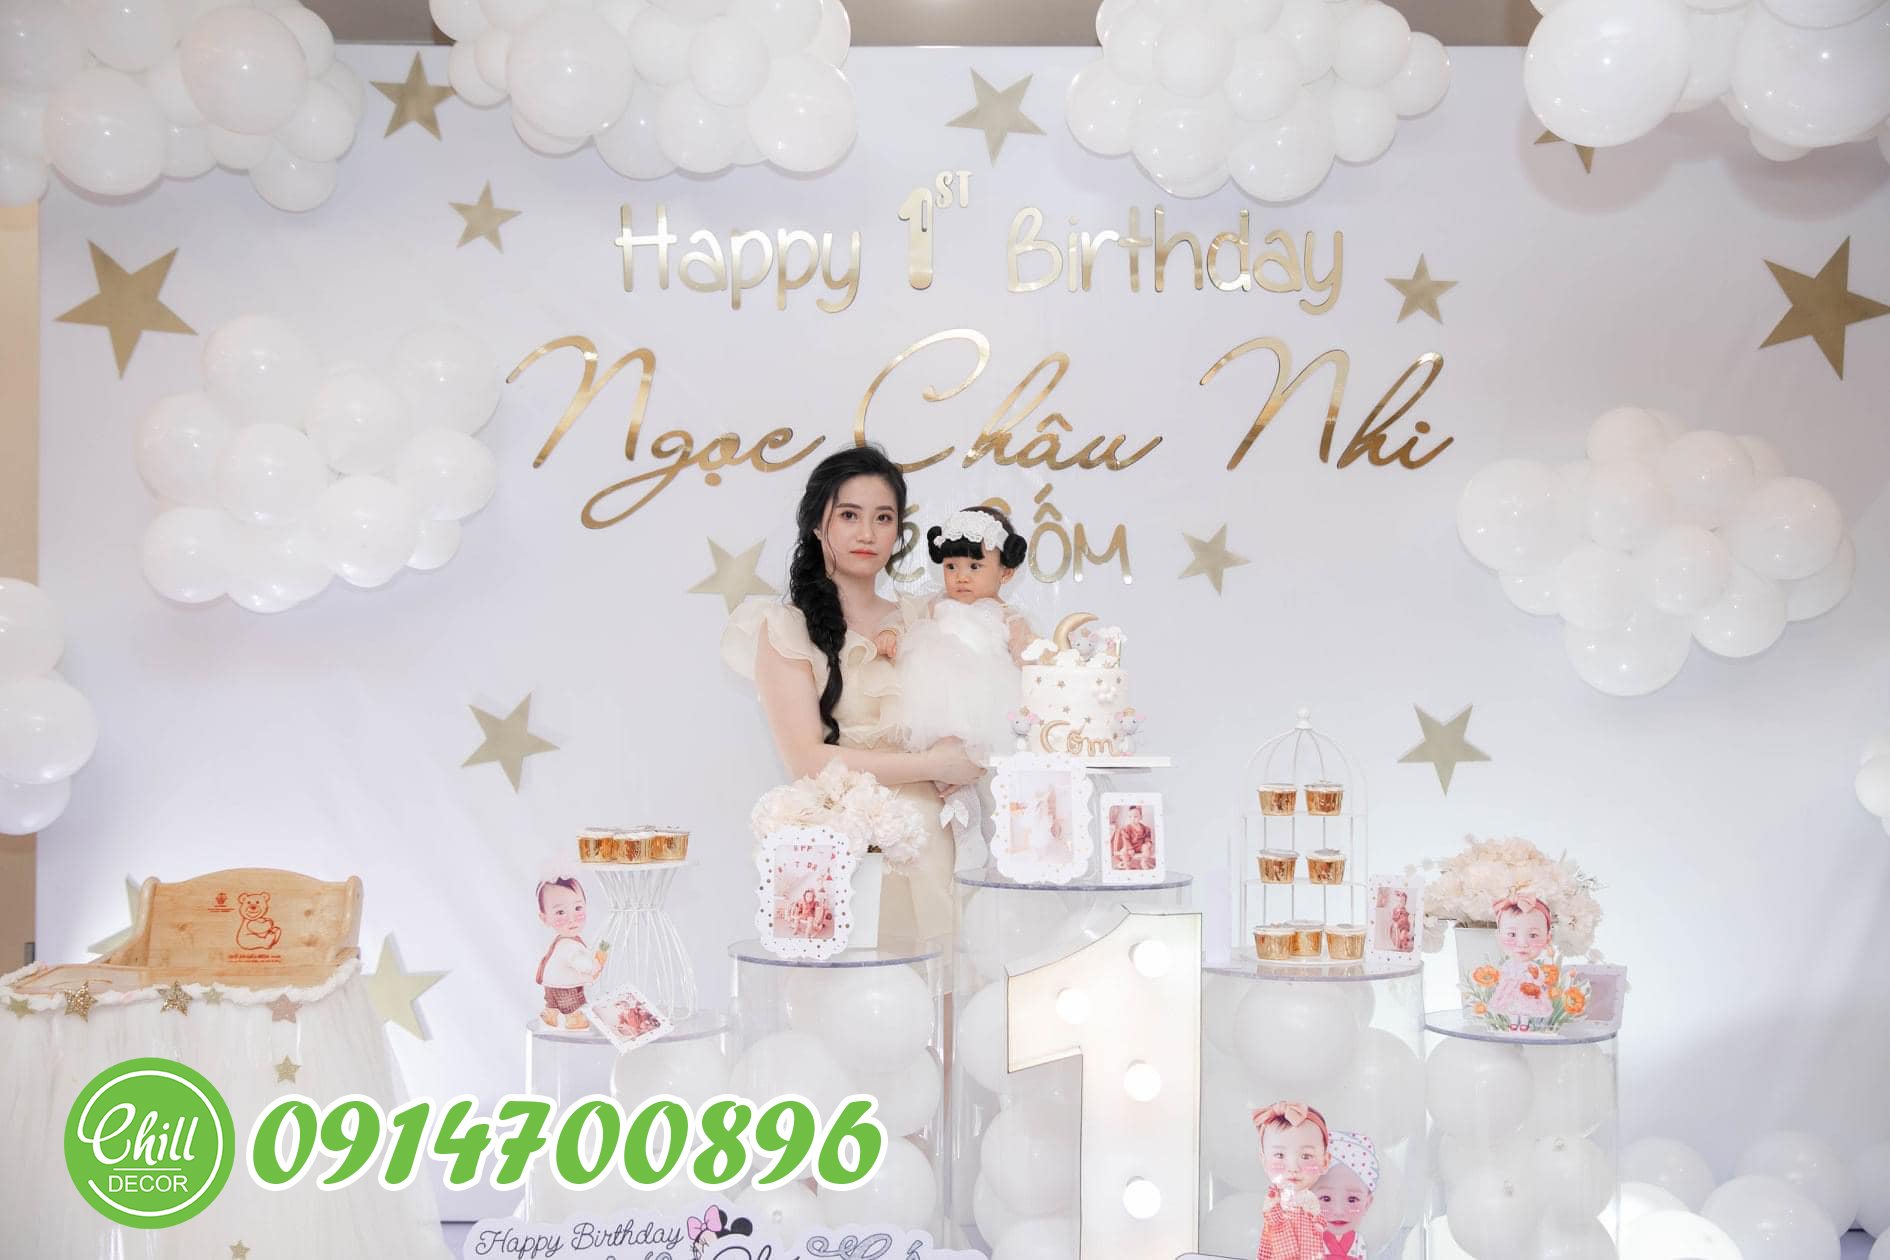 Dịch vụ trang trí sinh nhật cho bé gái 1 tuổi tại Hà Nội - Chill decor